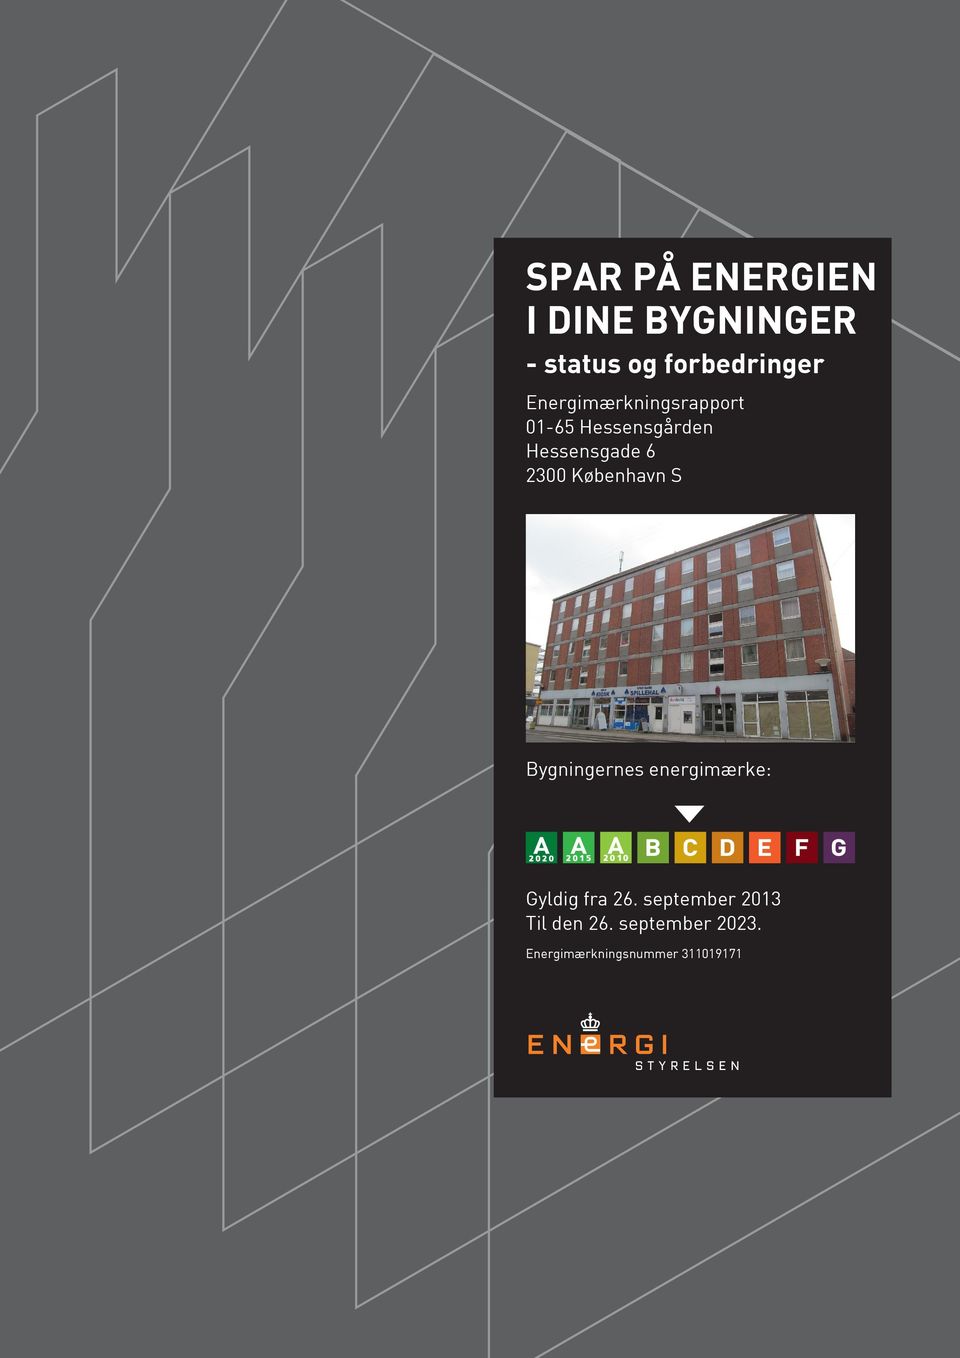 Hessensgade 6 300 København S ernes energimærke: Gyldig